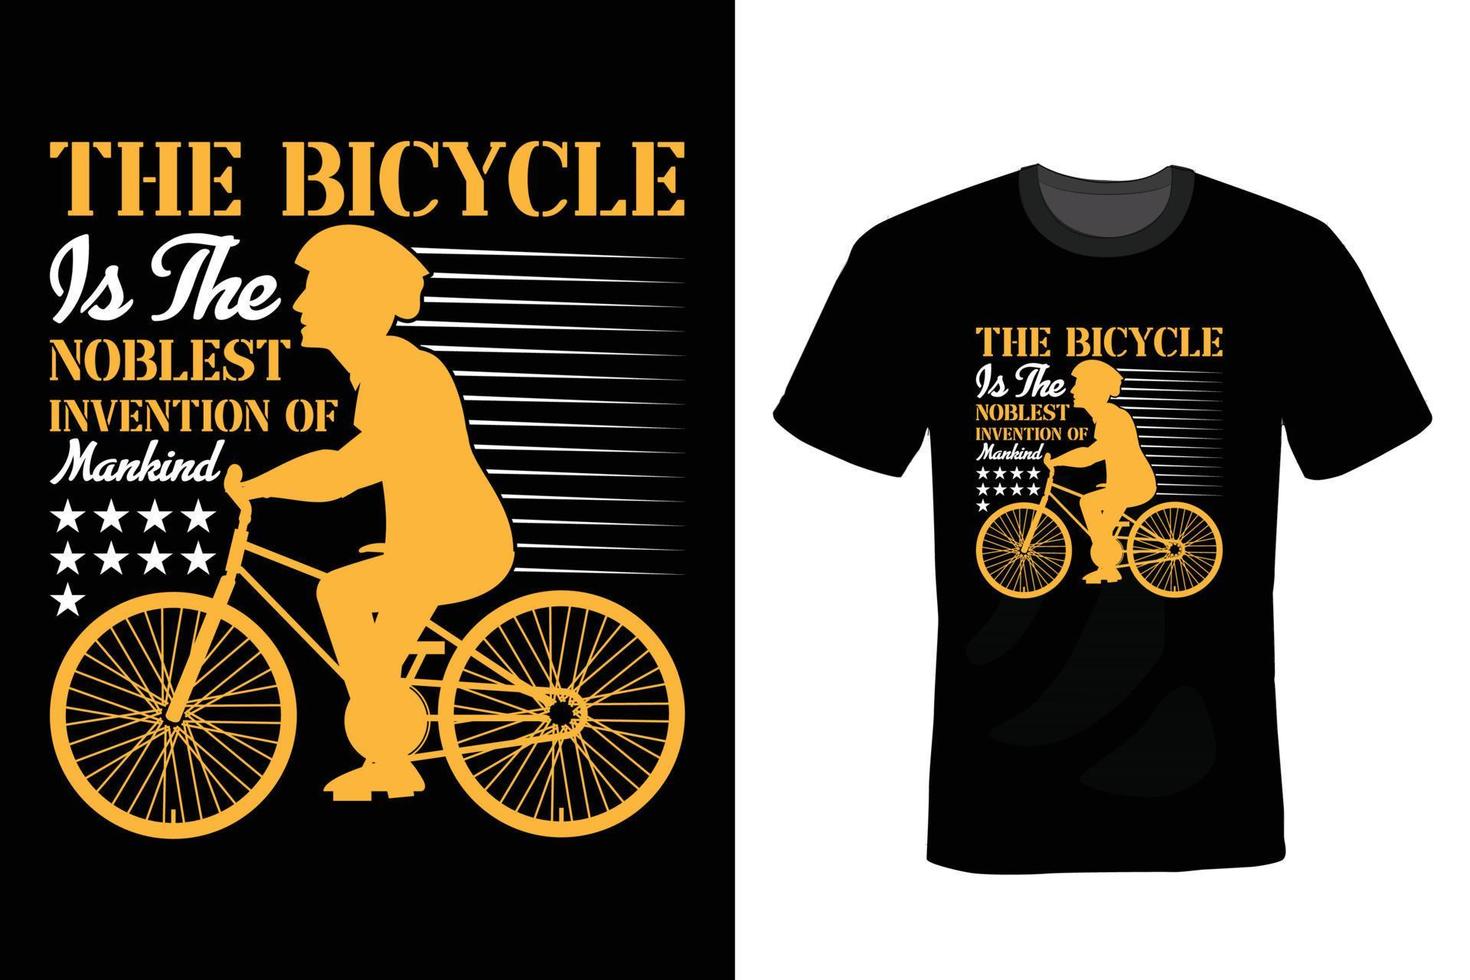 diseño de camiseta de bicicleta, vintage, tipografía vector